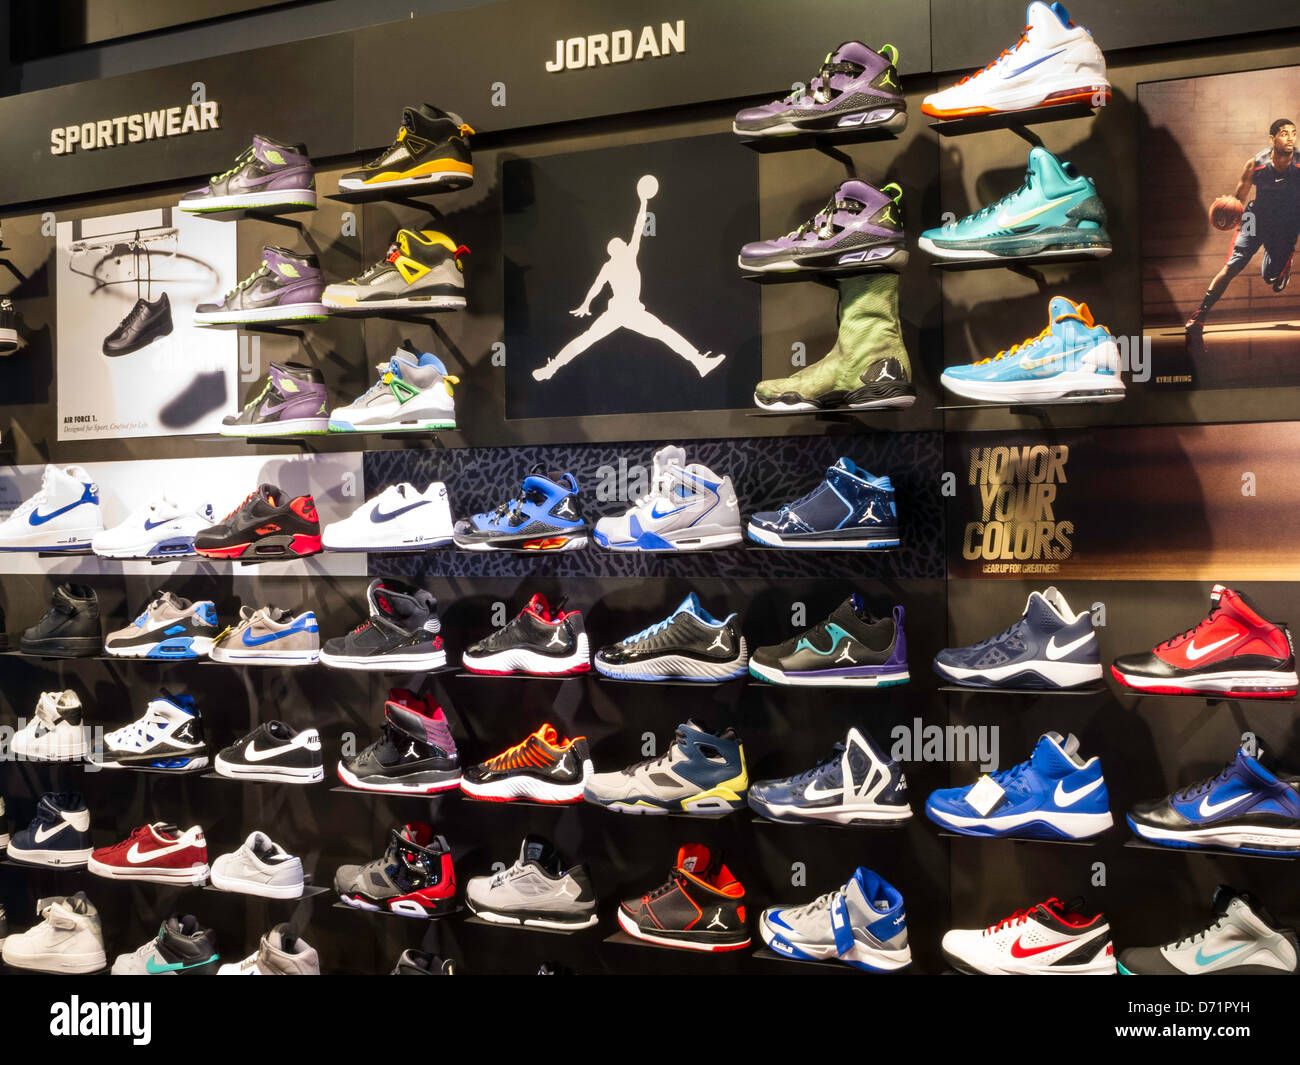 Nike Air Jordan Shoes Banque d'image et photos - Alamy